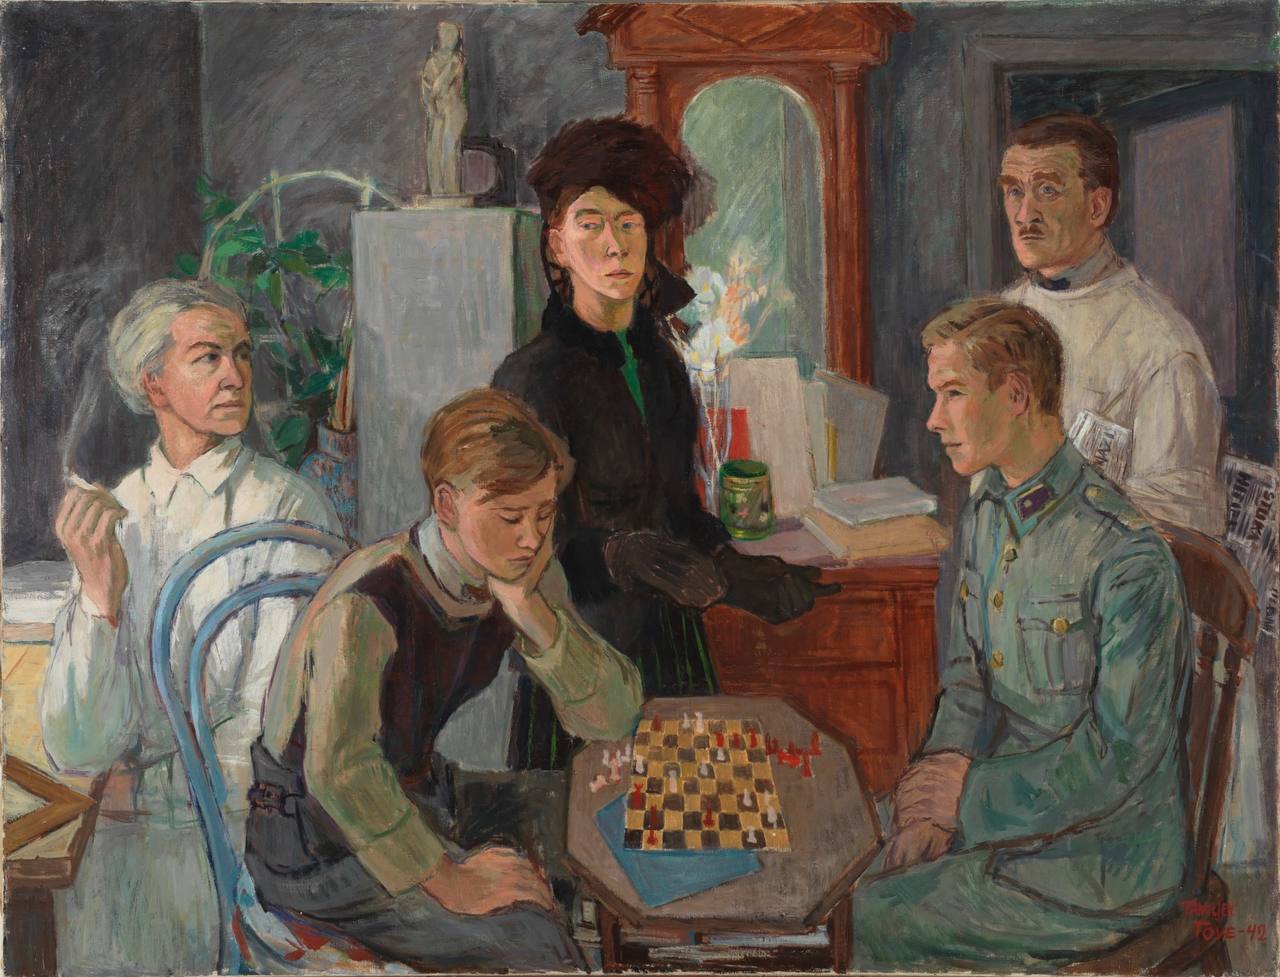 Иллюстрация: Туве Янссон, «Семья», 1942. Автопортрет самой Туве — в центре. Внимание на композицию, «кто с кем»; направление взглядов; газету у отца под мышкой.